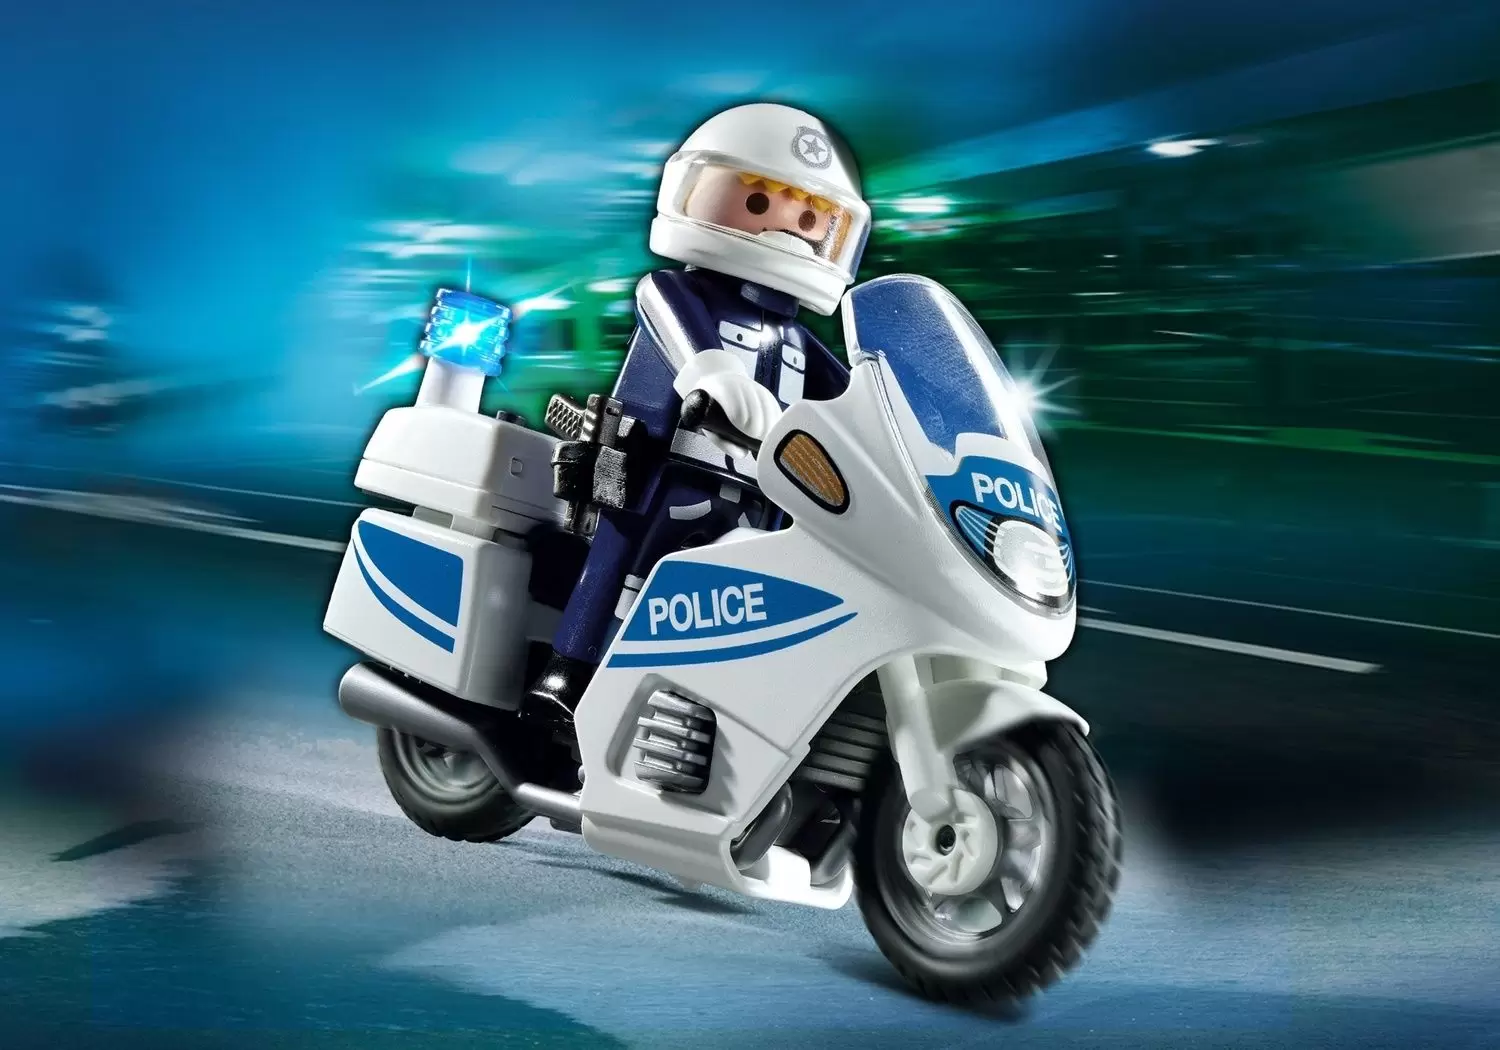 Playmobil Policier - Motard de police avec lumière clignotante